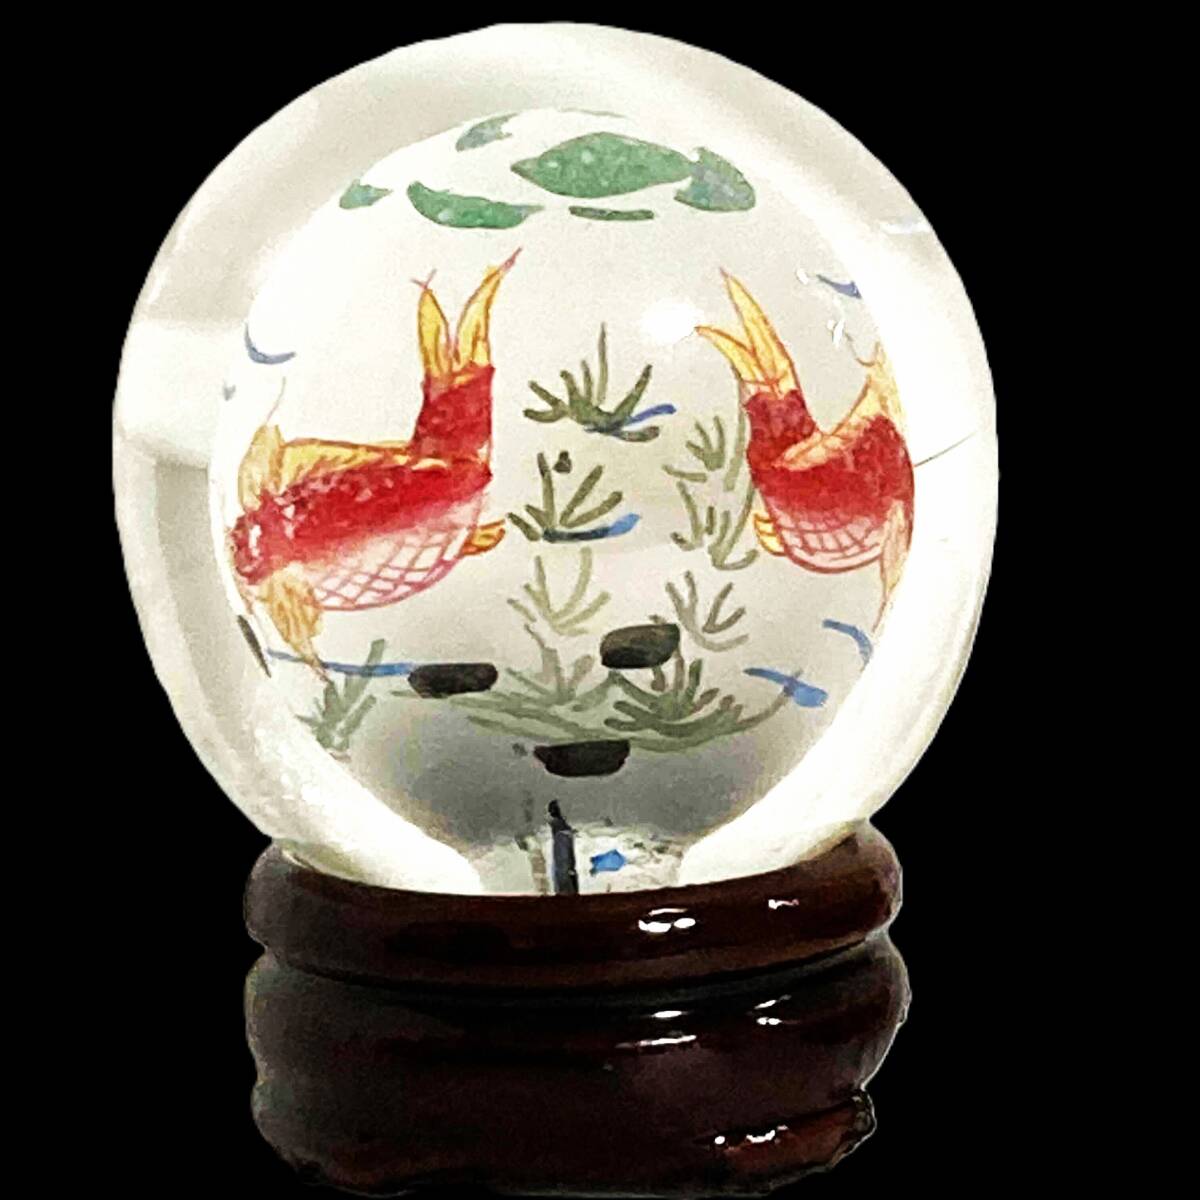 중국 미술, 내부 그림이 있는 둥근 공, 나무 베이스가 있는, 높이 약. 5.5cm, 선박, 수정구슬, 공 안에 그림 그리기, 유리 공, 유리 제조, 장식, 내부 사진, 금붕어, 중국, 물고기, 선박, 유리, 공예 유리